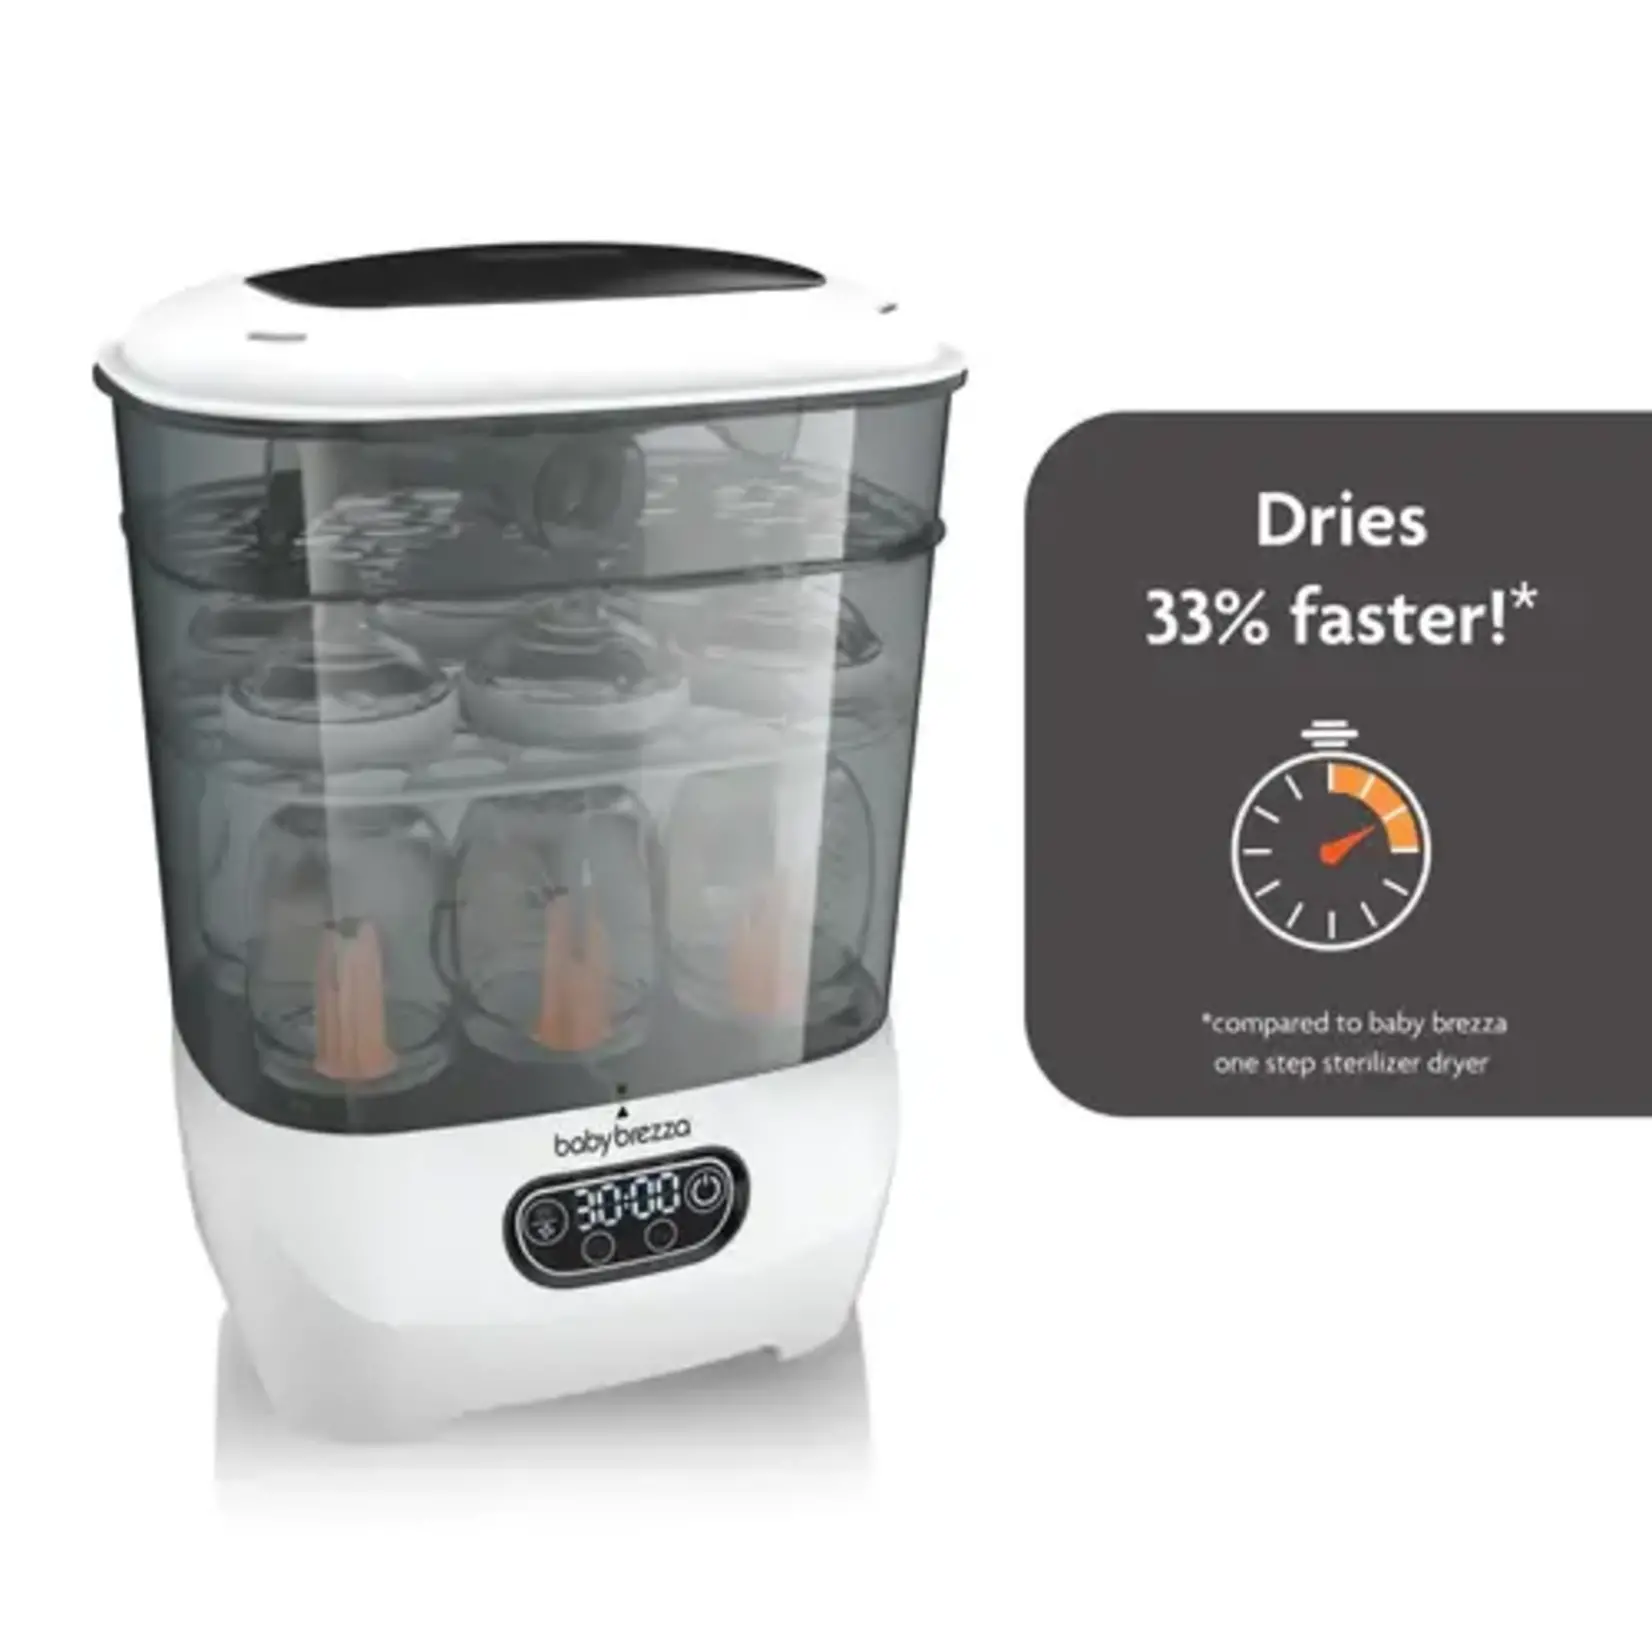 Baby Brezza One Step Sterilizer-Dryer Advanced